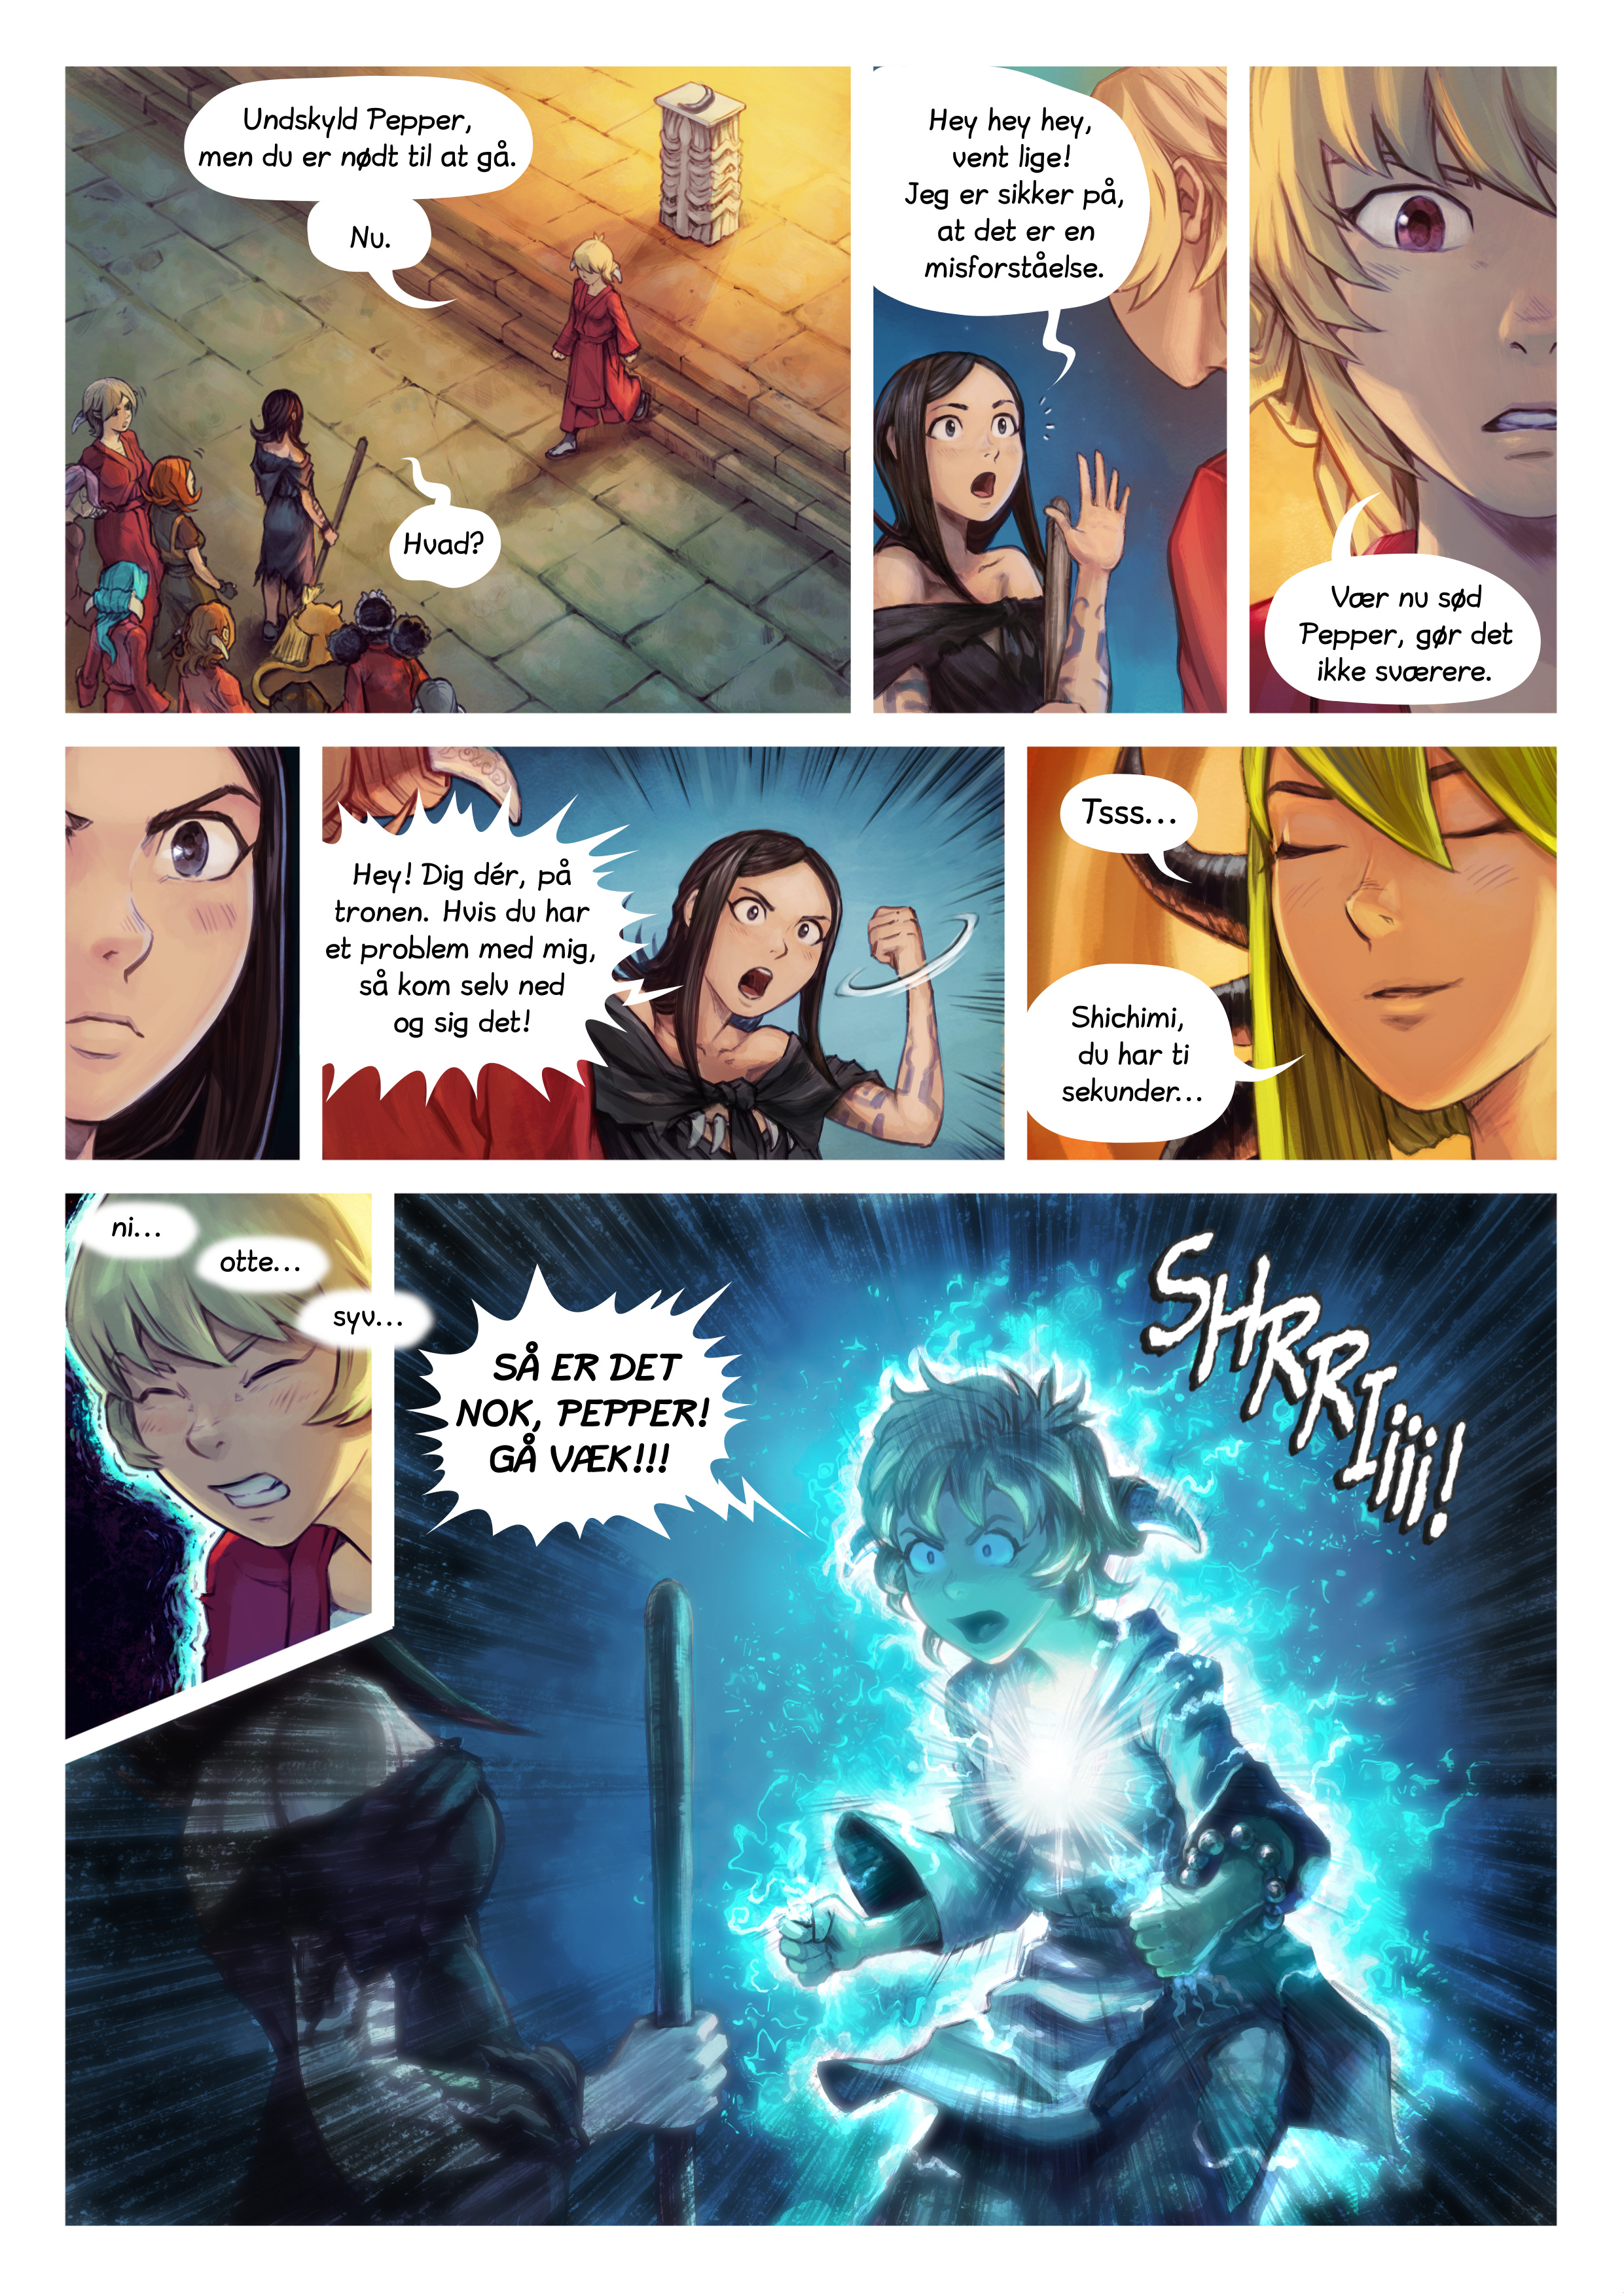 Episode 34: Shichimi slås til ridder, Page 5